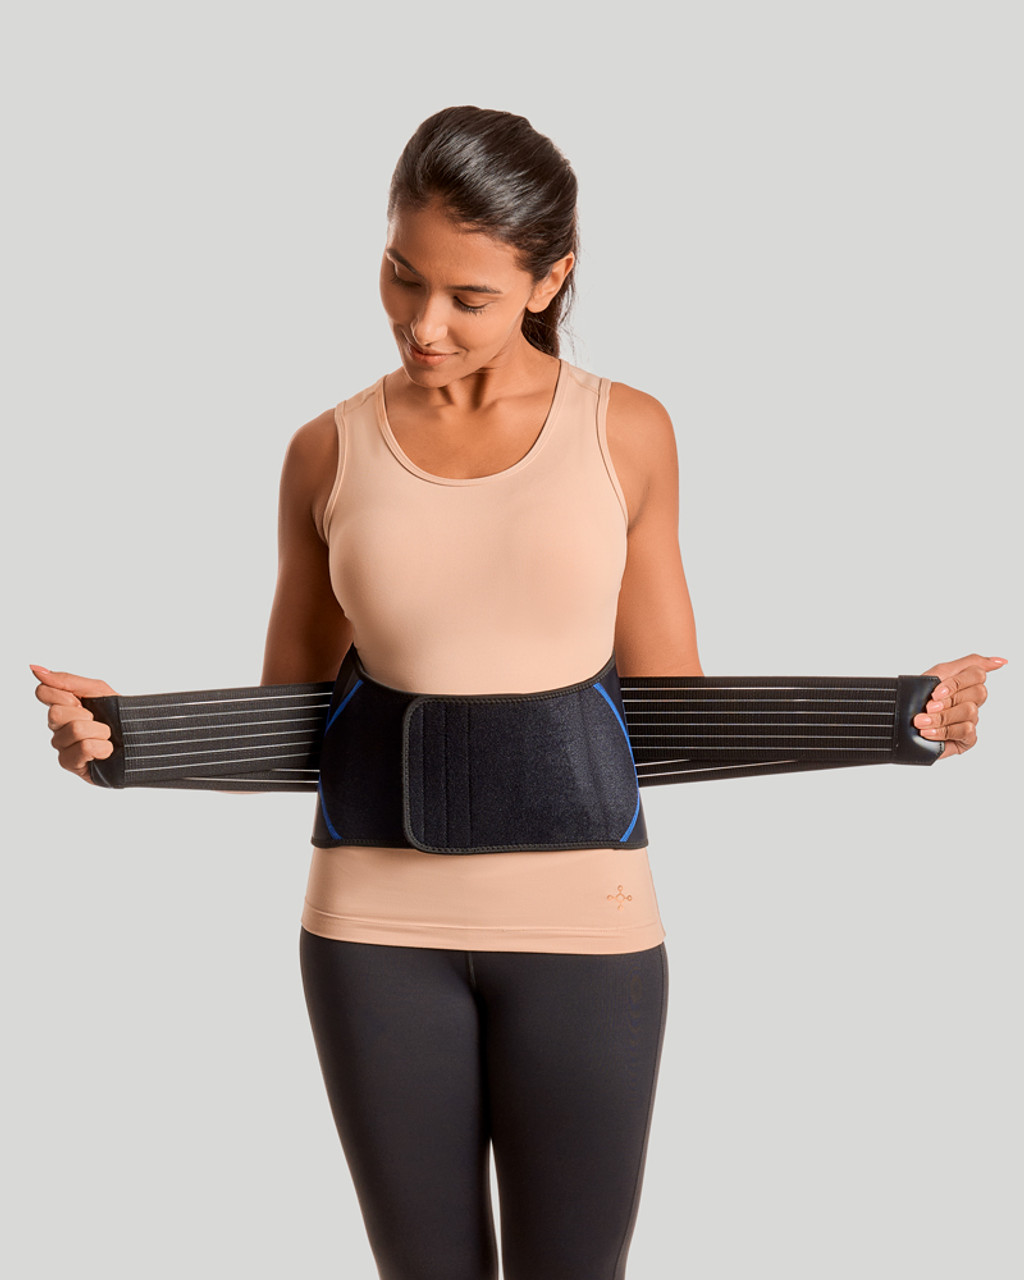 Copper Slim Waist Belt for Women - Workout Compression Belt